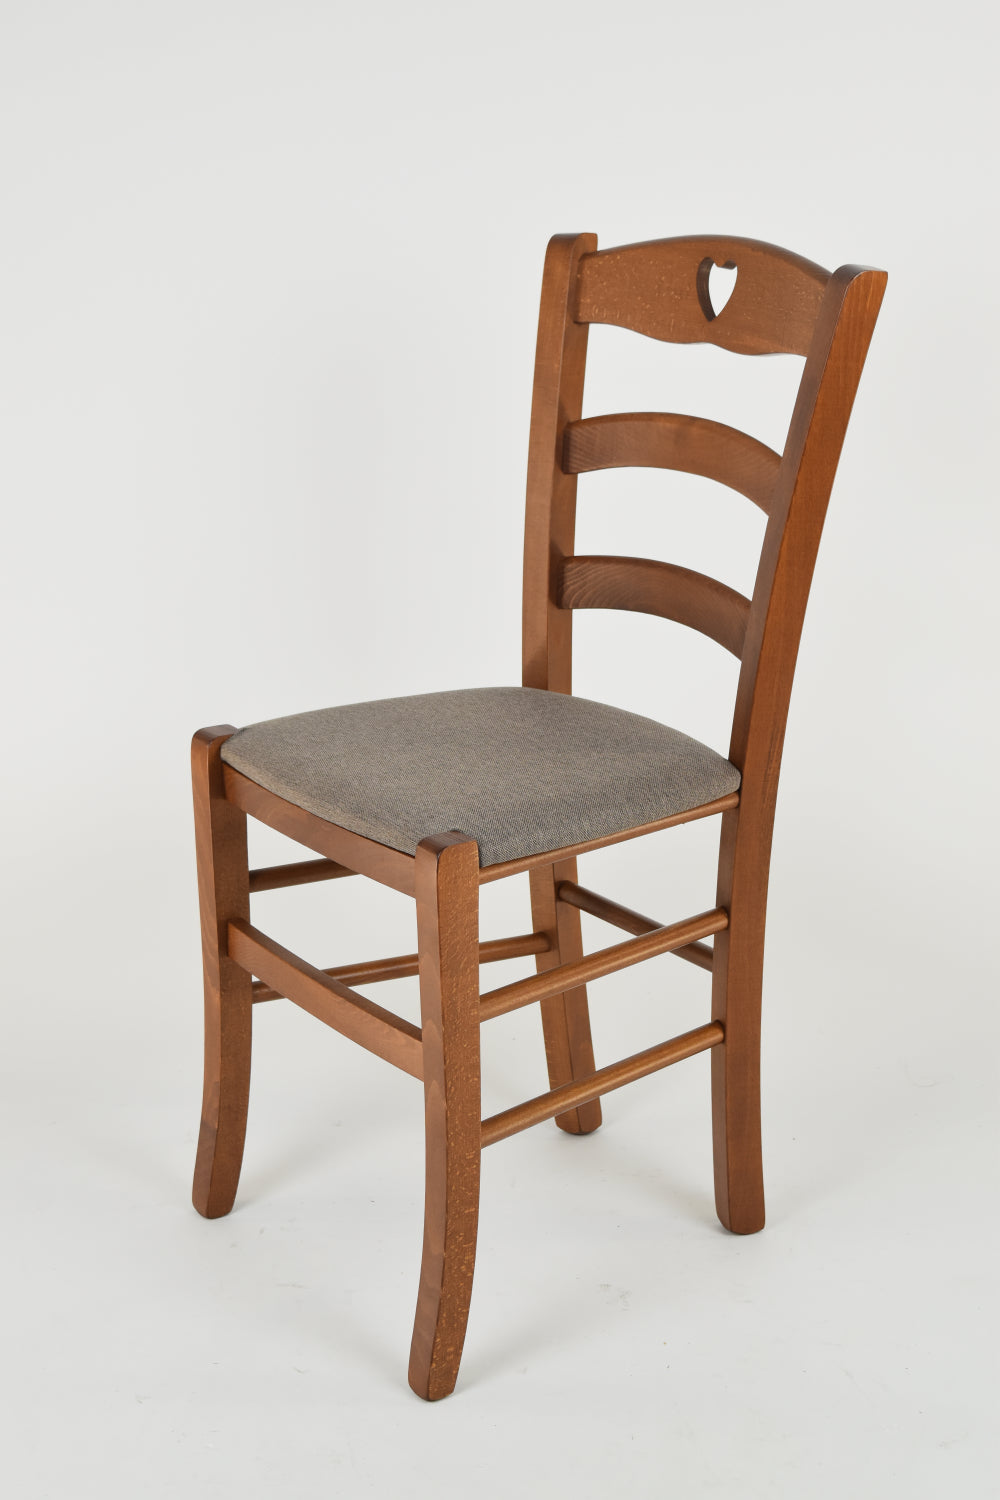 Tommychairs - Set 4 sillas de Cocina y Comedor Cuore, Estructura en Madera de Haya Color Nuez Claro y Asiento tapizado en Tejido Color corzo